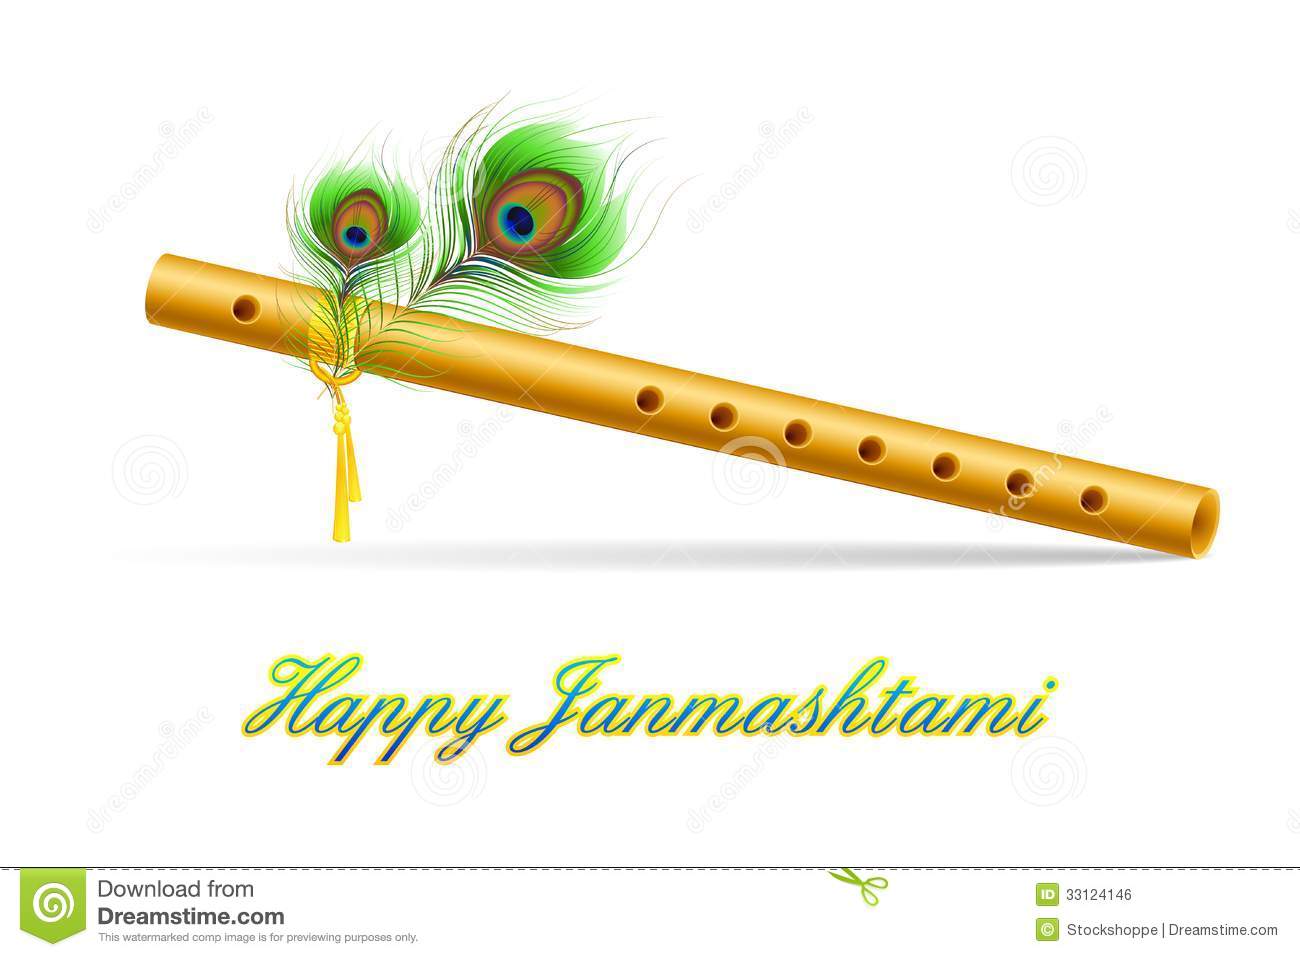 Krishna Janmashtami - Hindu f